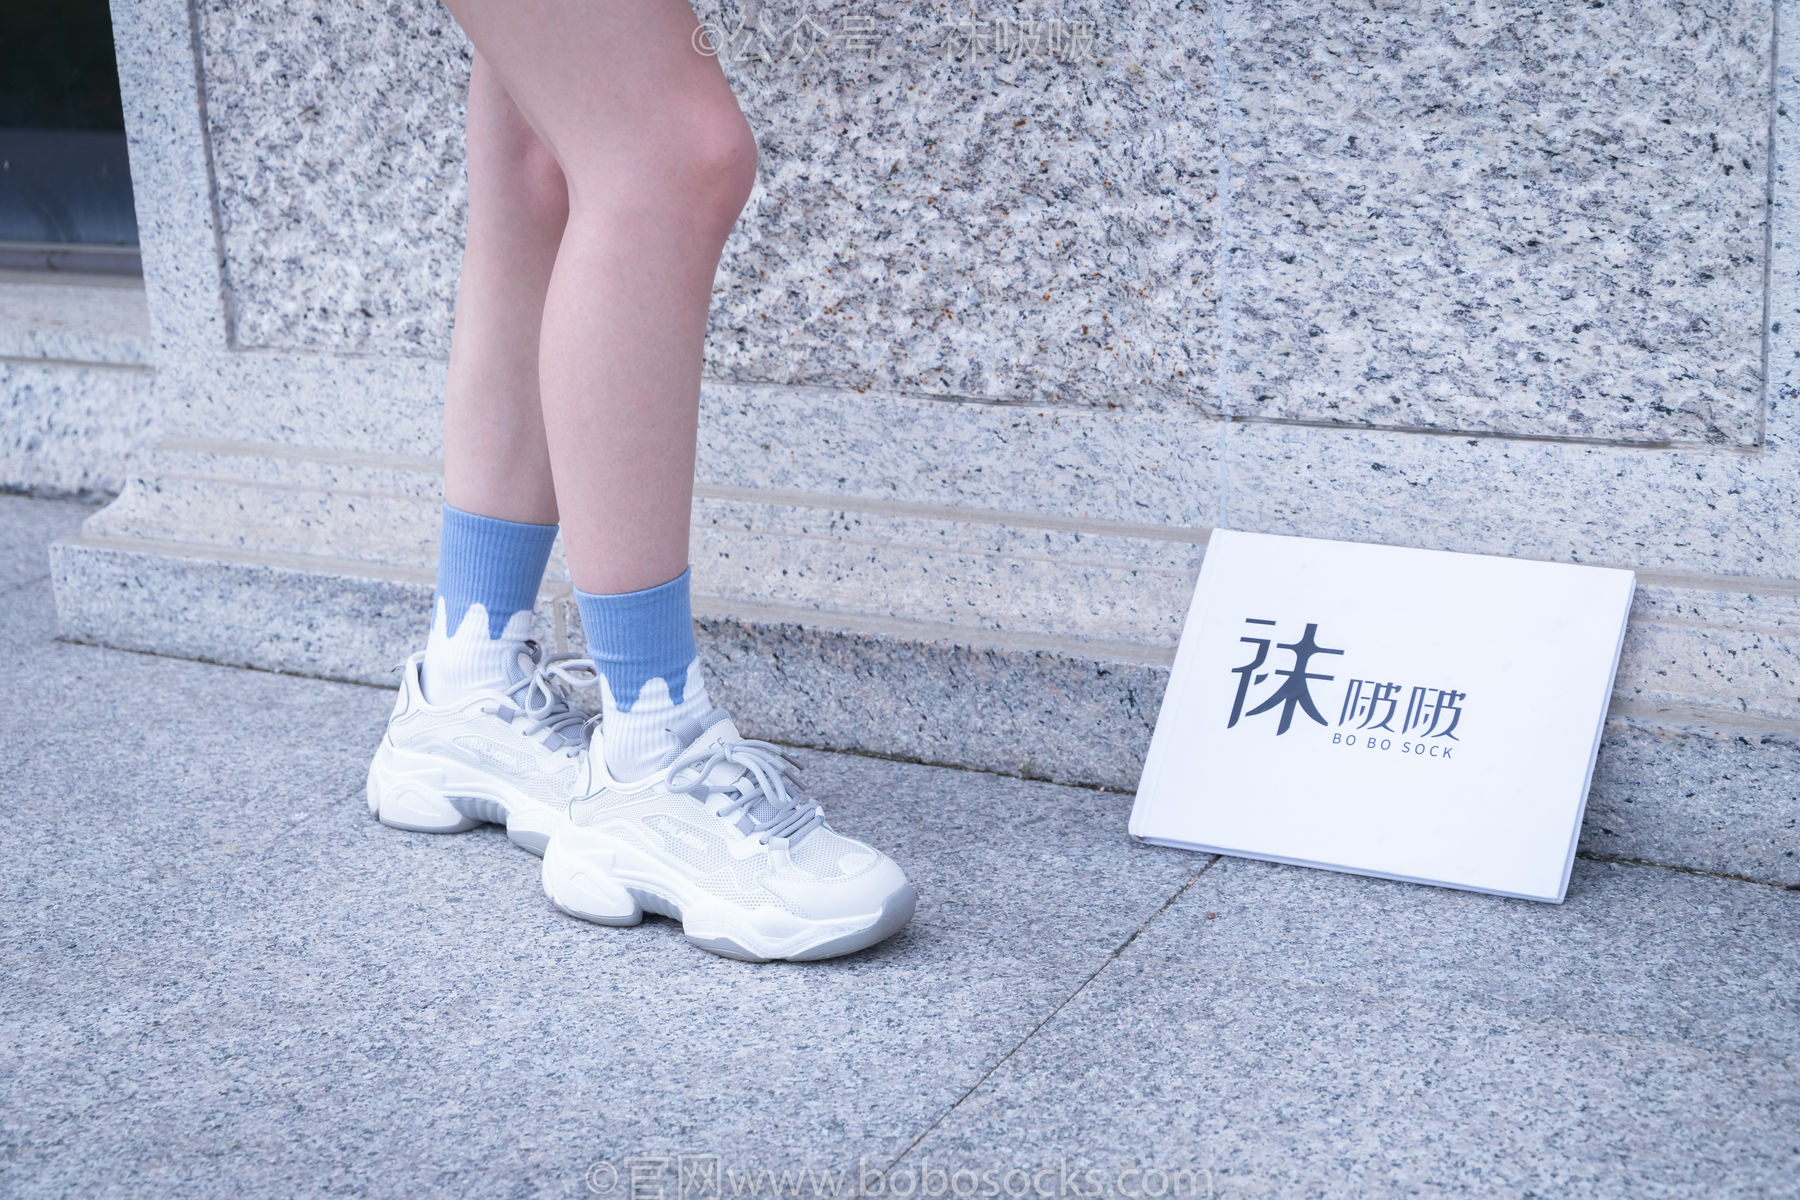 BoBoSocks袜啵啵 No.028 小米-运动鞋、白棉袜、裸足